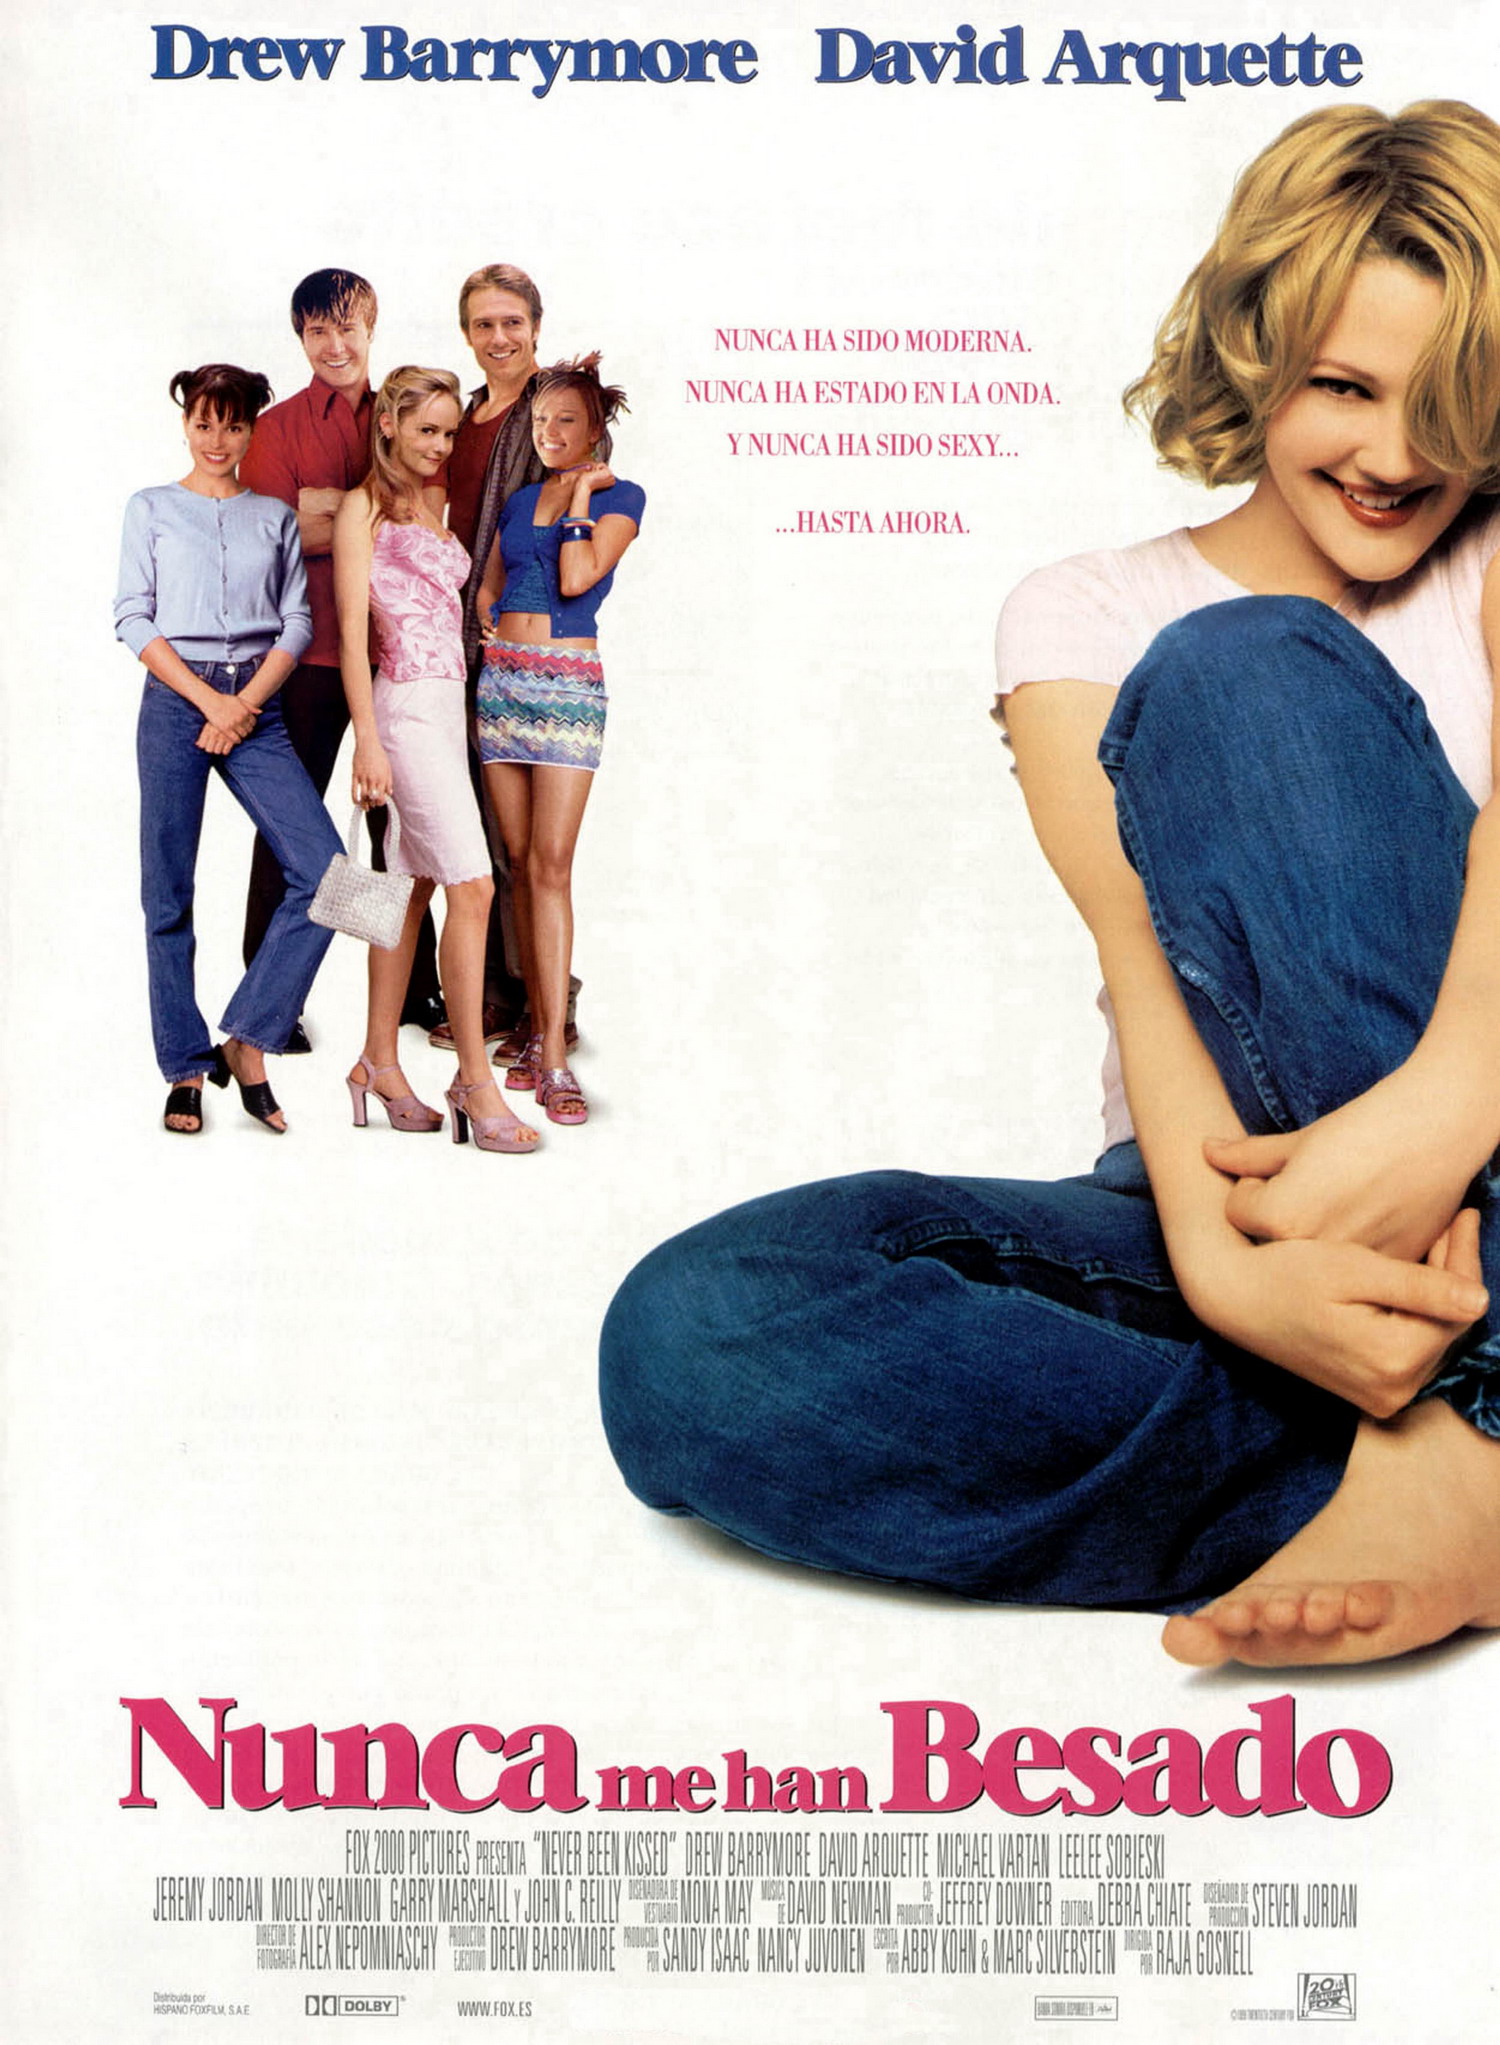 Nunca me han besado (Never been kissed) (1999) .